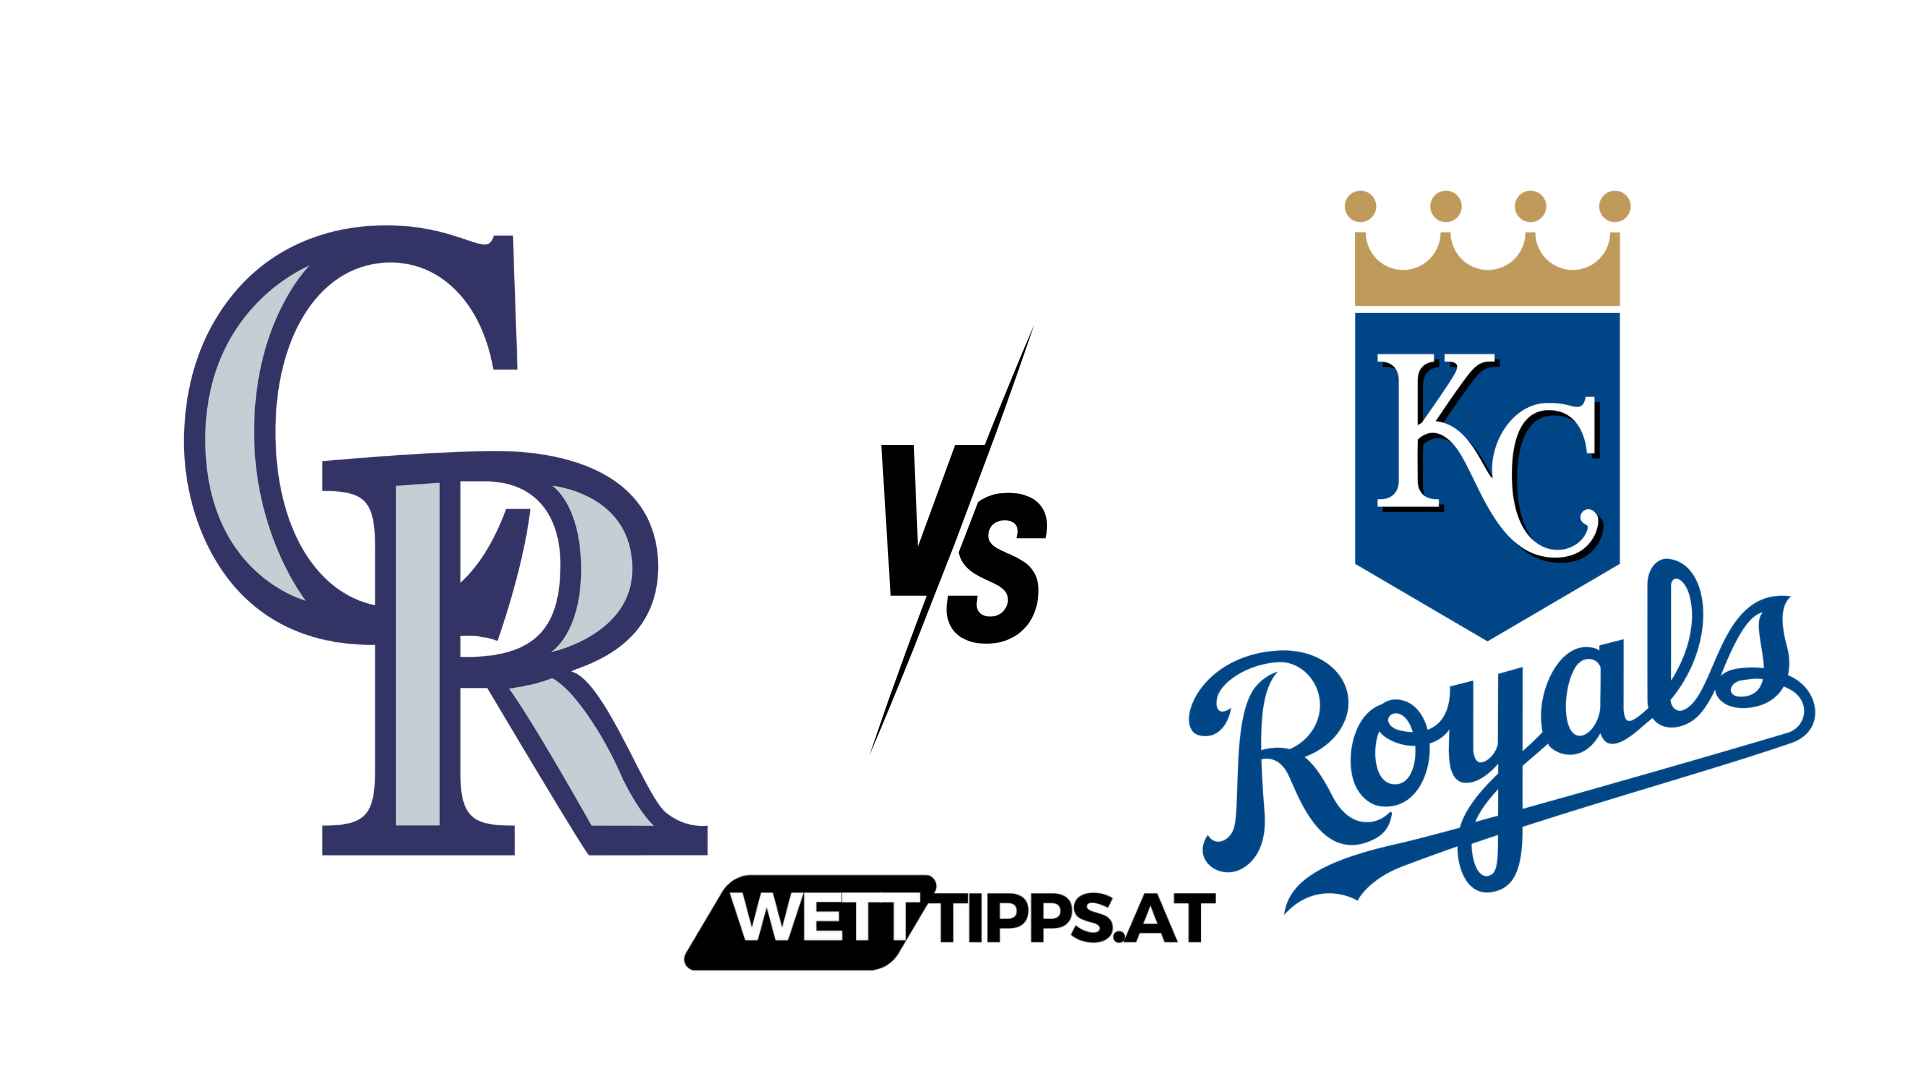 Colorado Rockies vs Kansas City Royals MLB Wett Tipps